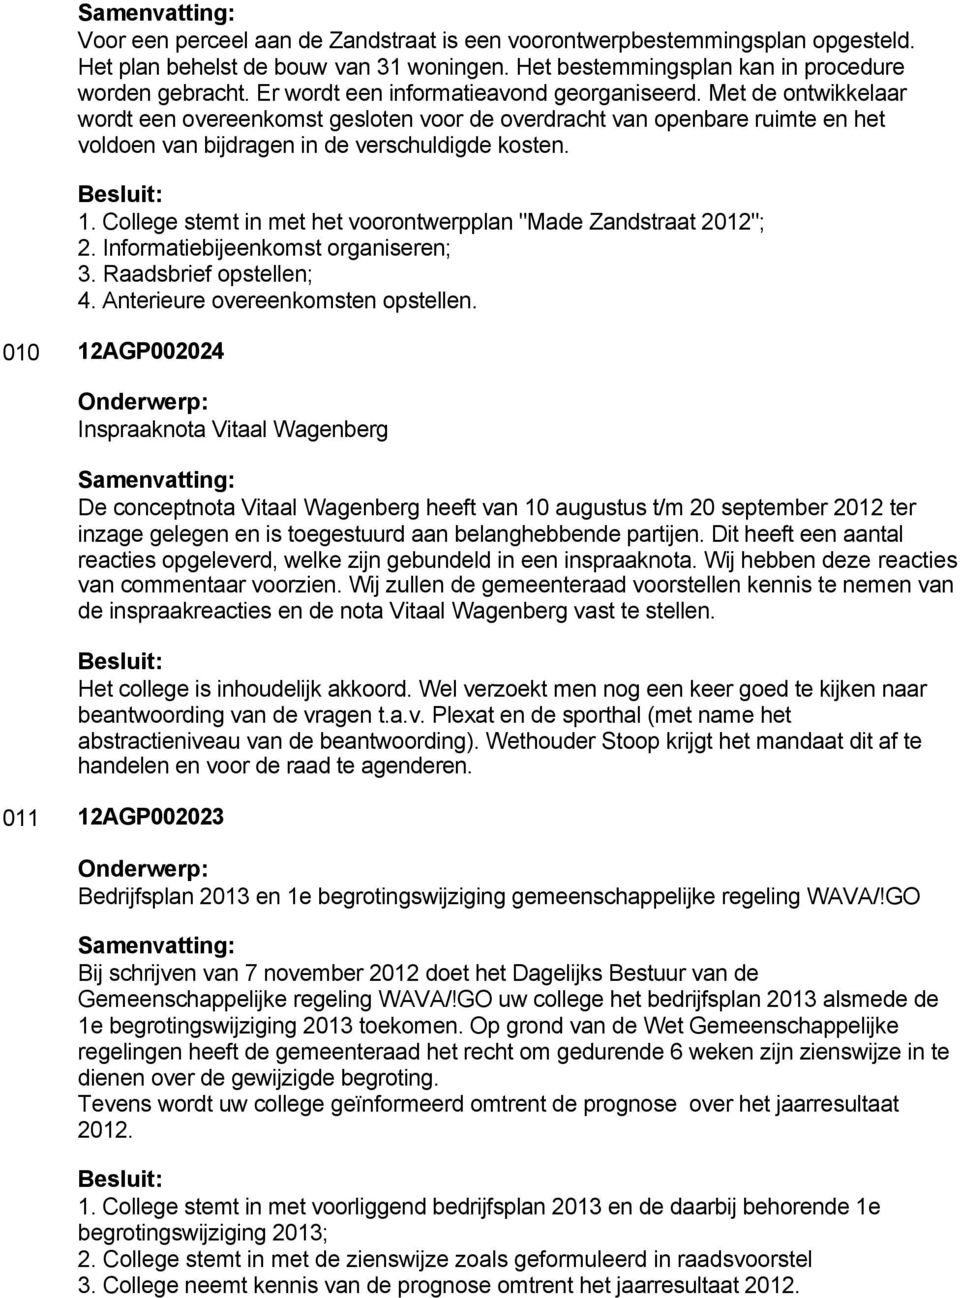 College stemt in met het voorontwerpplan "Made Zandstraat 2012"; 2. Informatiebijeenkomst organiseren; 3. Raadsbrief opstellen; 4. Anterieure overeenkomsten opstellen.